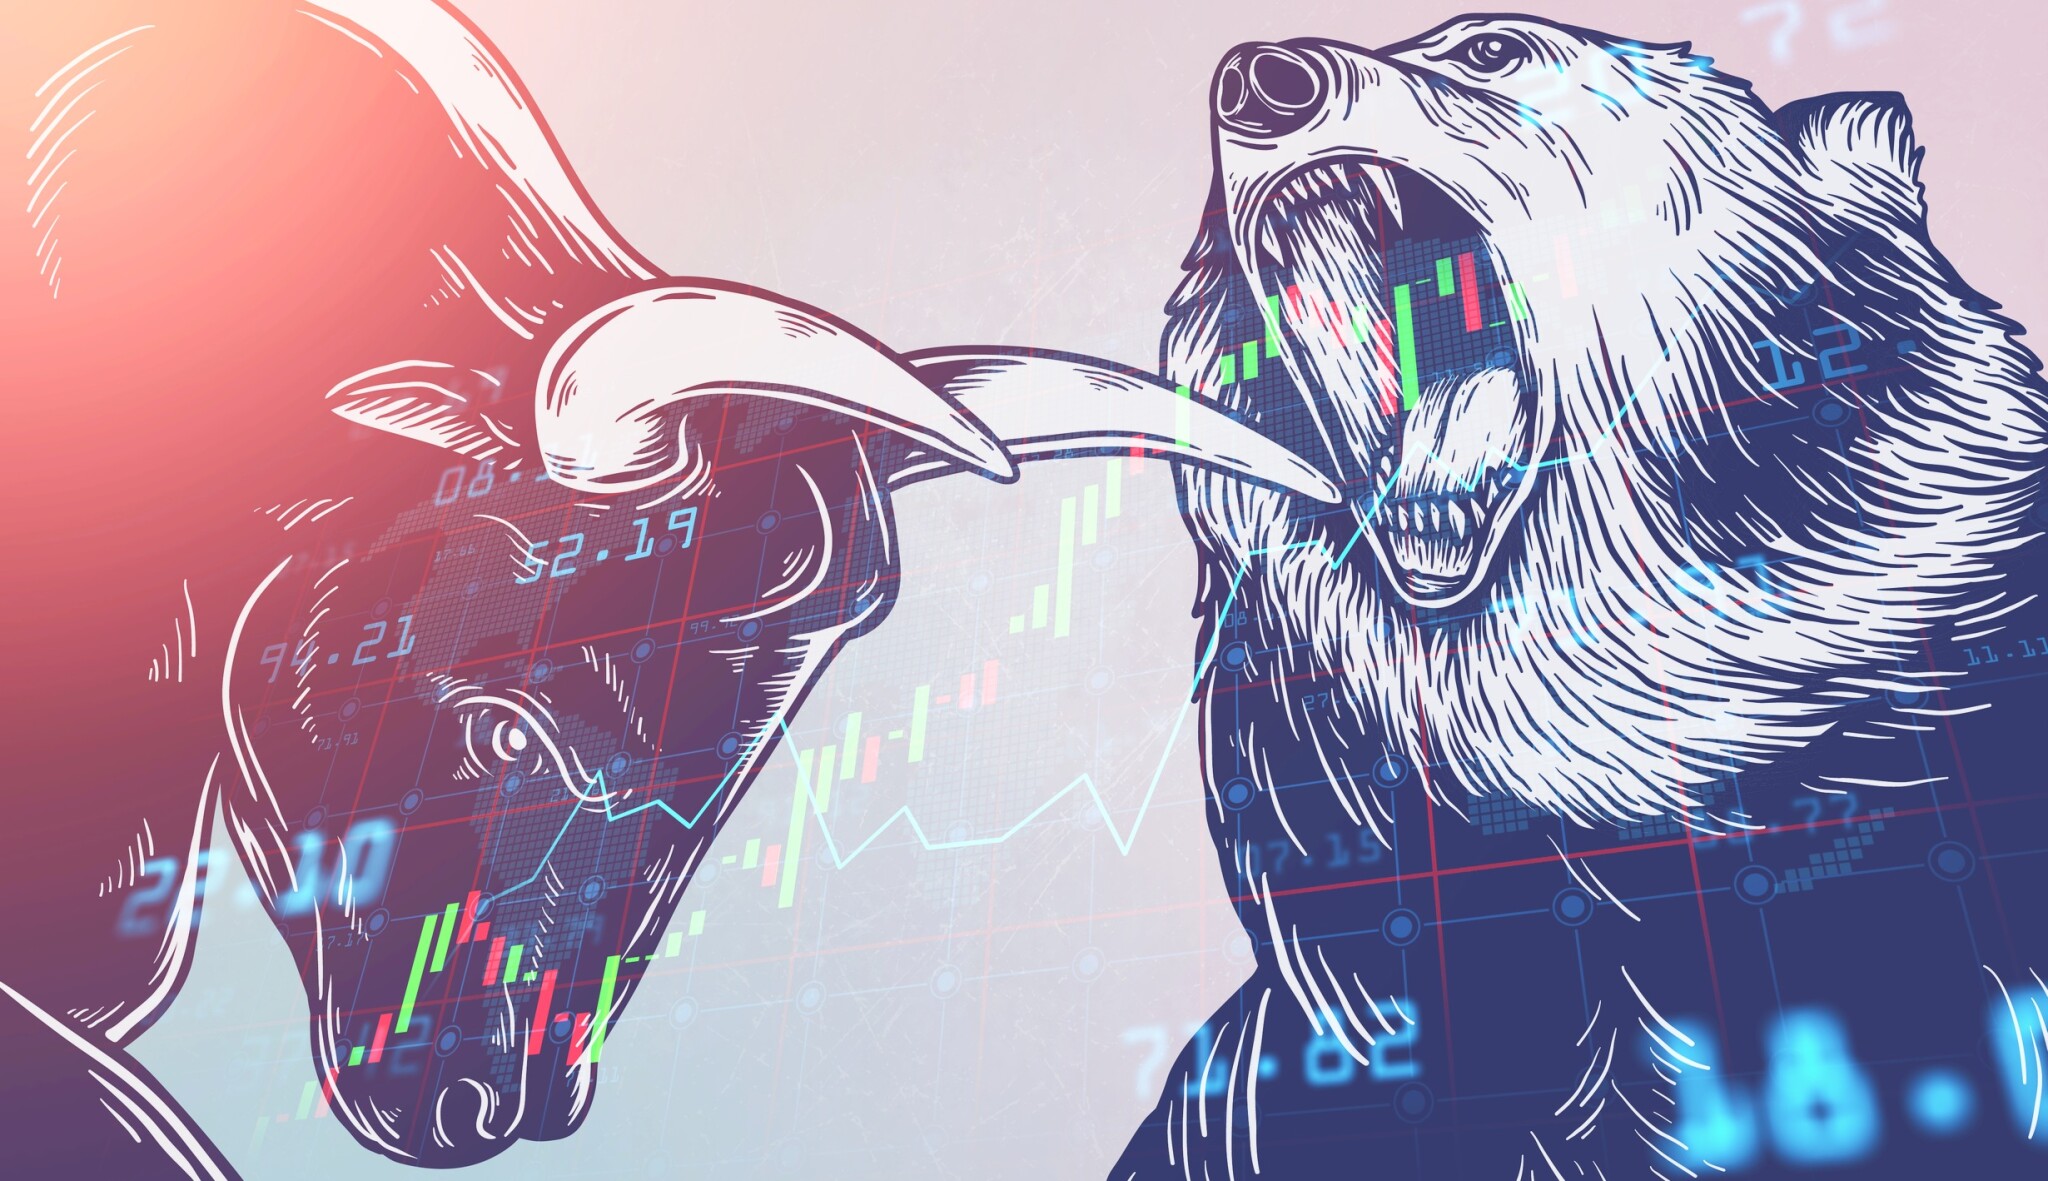 Bude party pokračovat? Investoři předpovídají vývoj na akciových trzích pro letošní rok